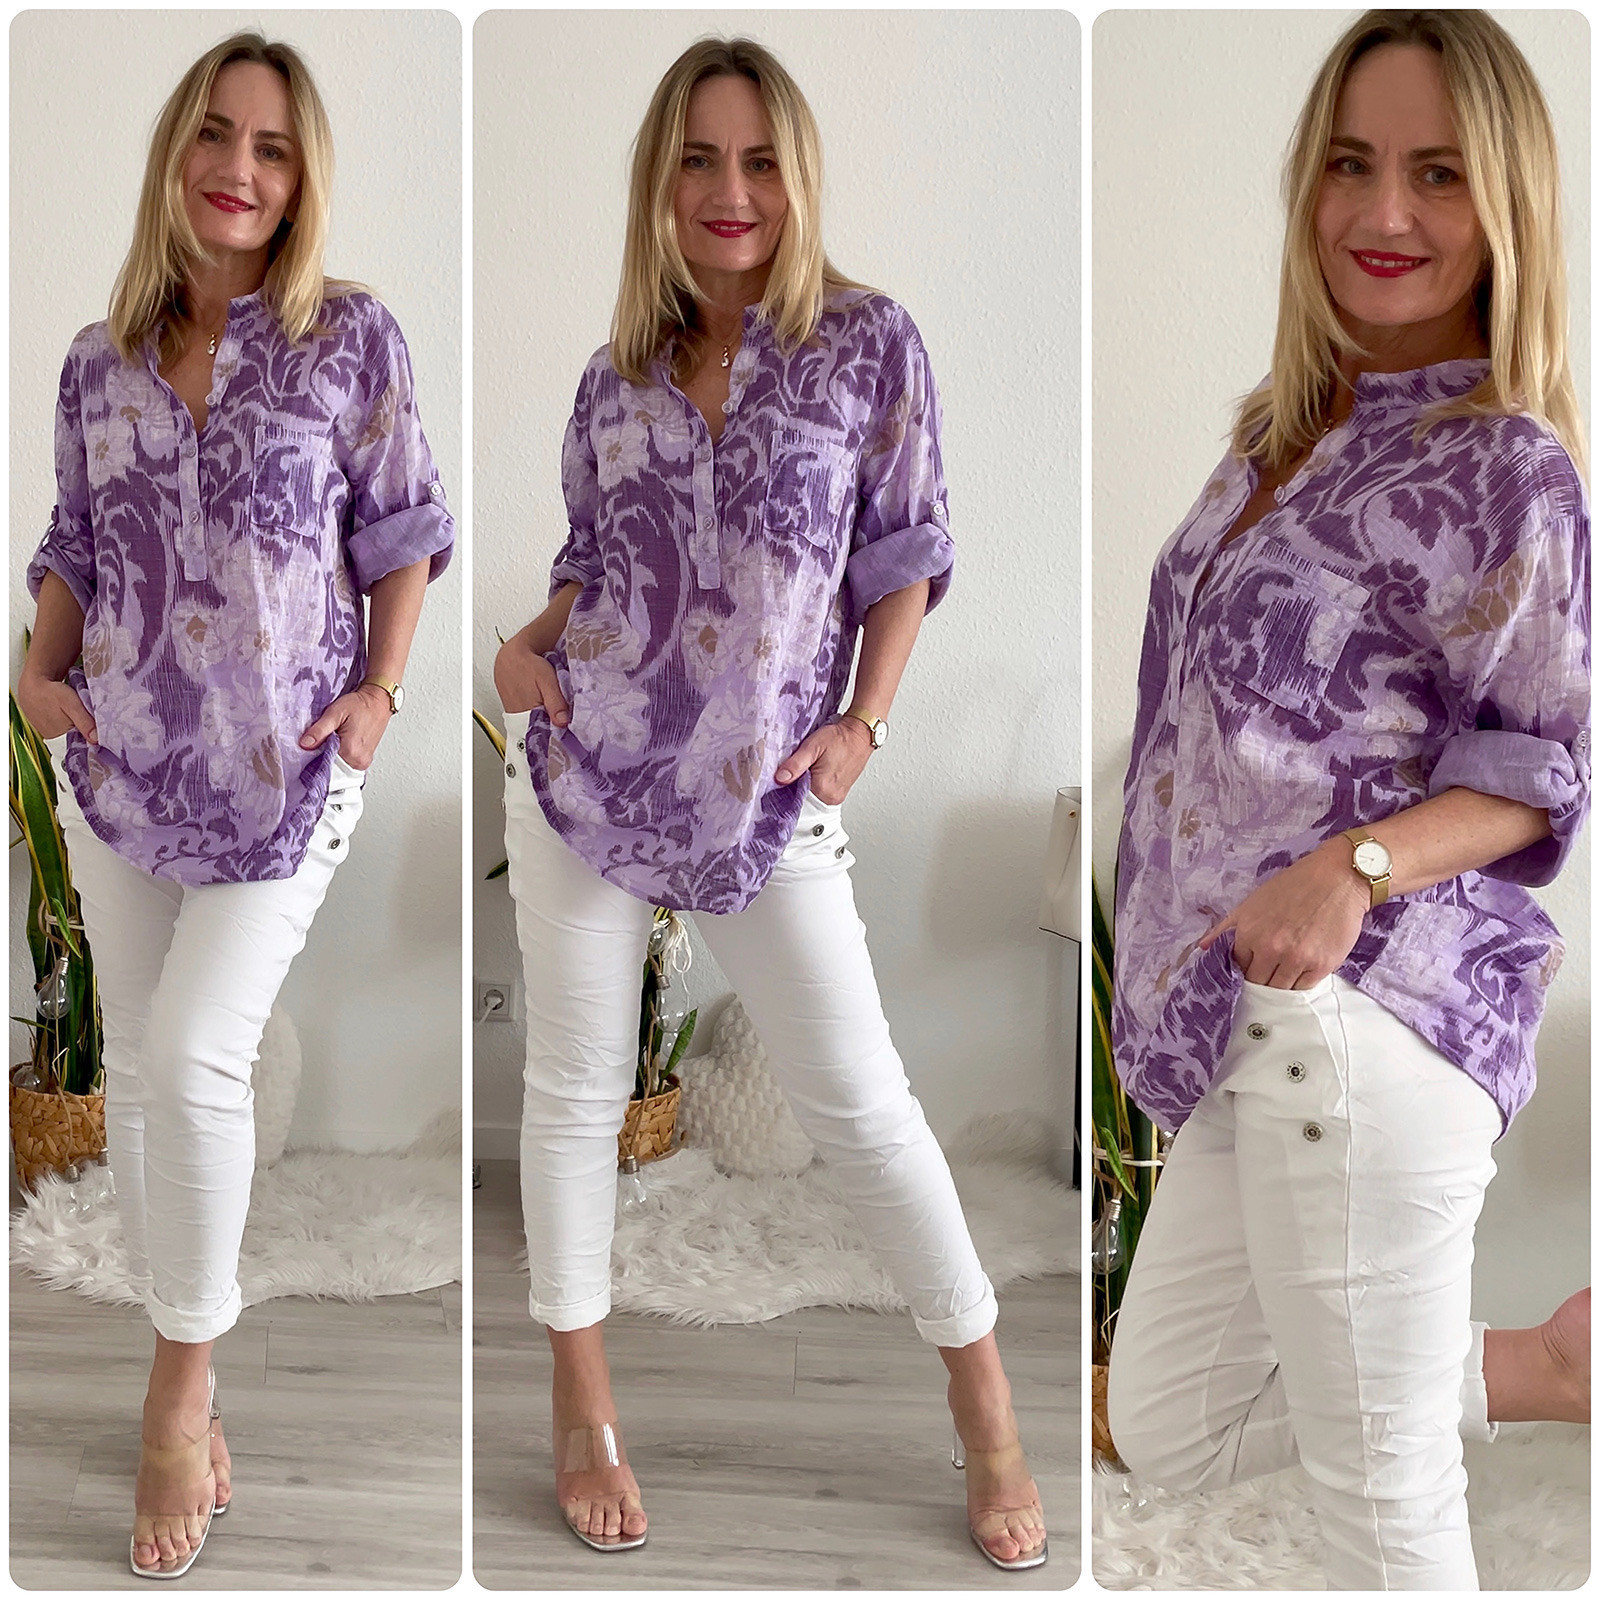 Damen Bluse Fischerhemd Blumen lila oversize 38 bis 44/46 Made in Italy 